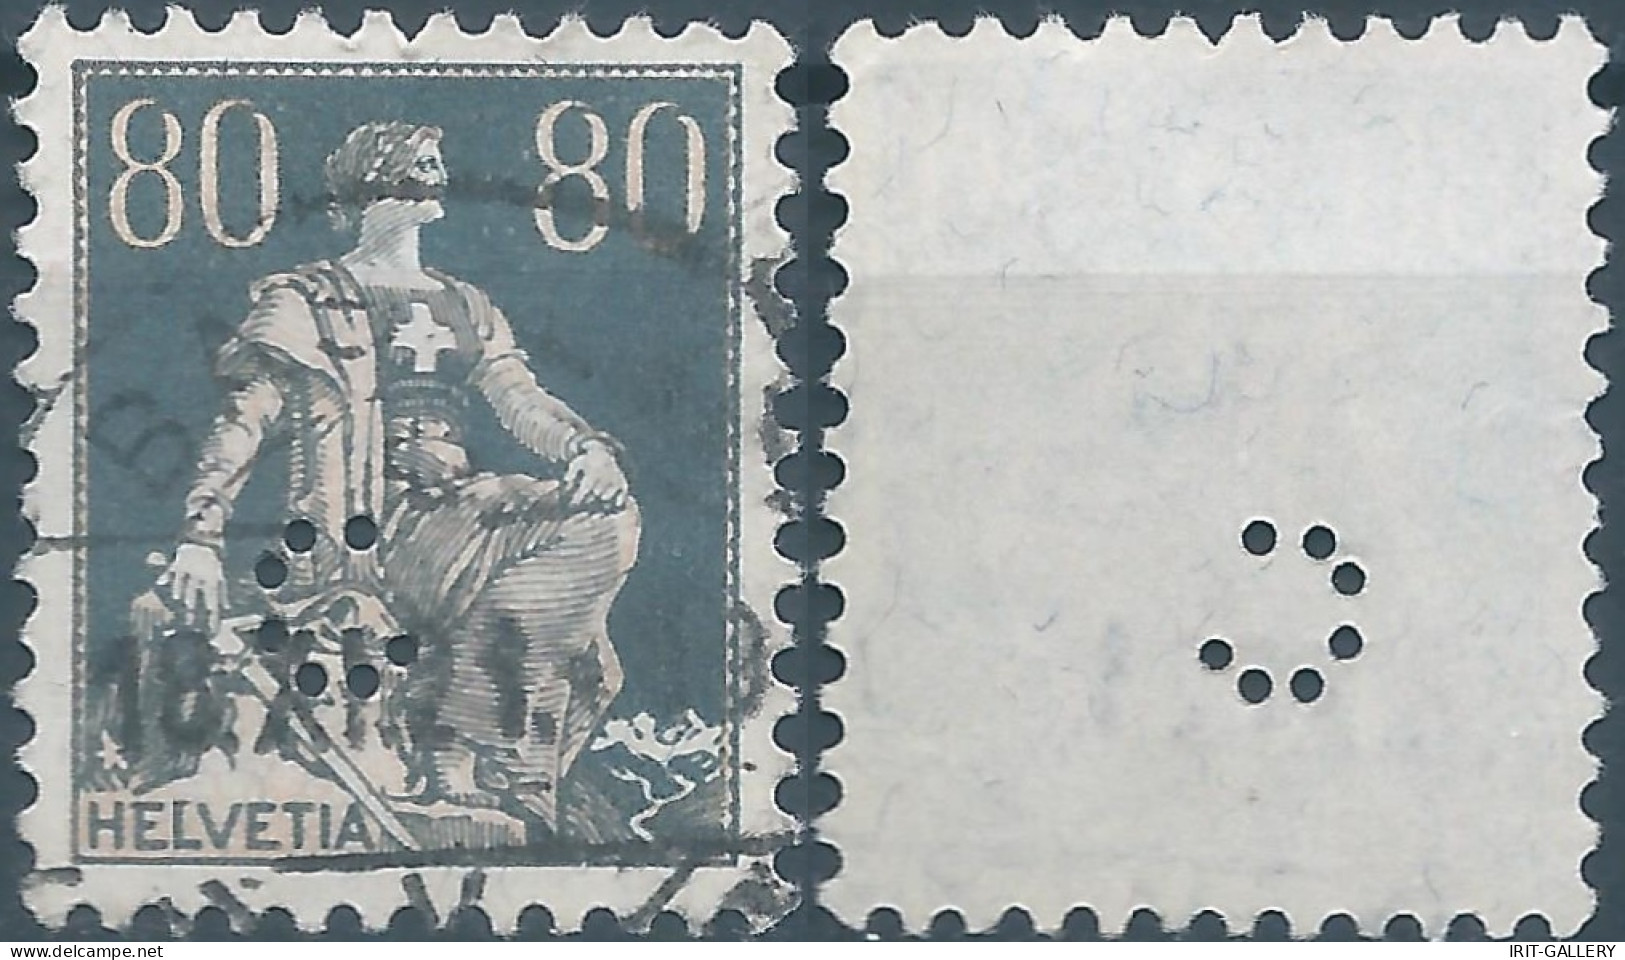 Svizzera-Switzerland-Schweiz-Suisse,HELVETIA,1915 -1918 , Helvetia With The Sword 80(C)grey (PERFIN) - Perfins